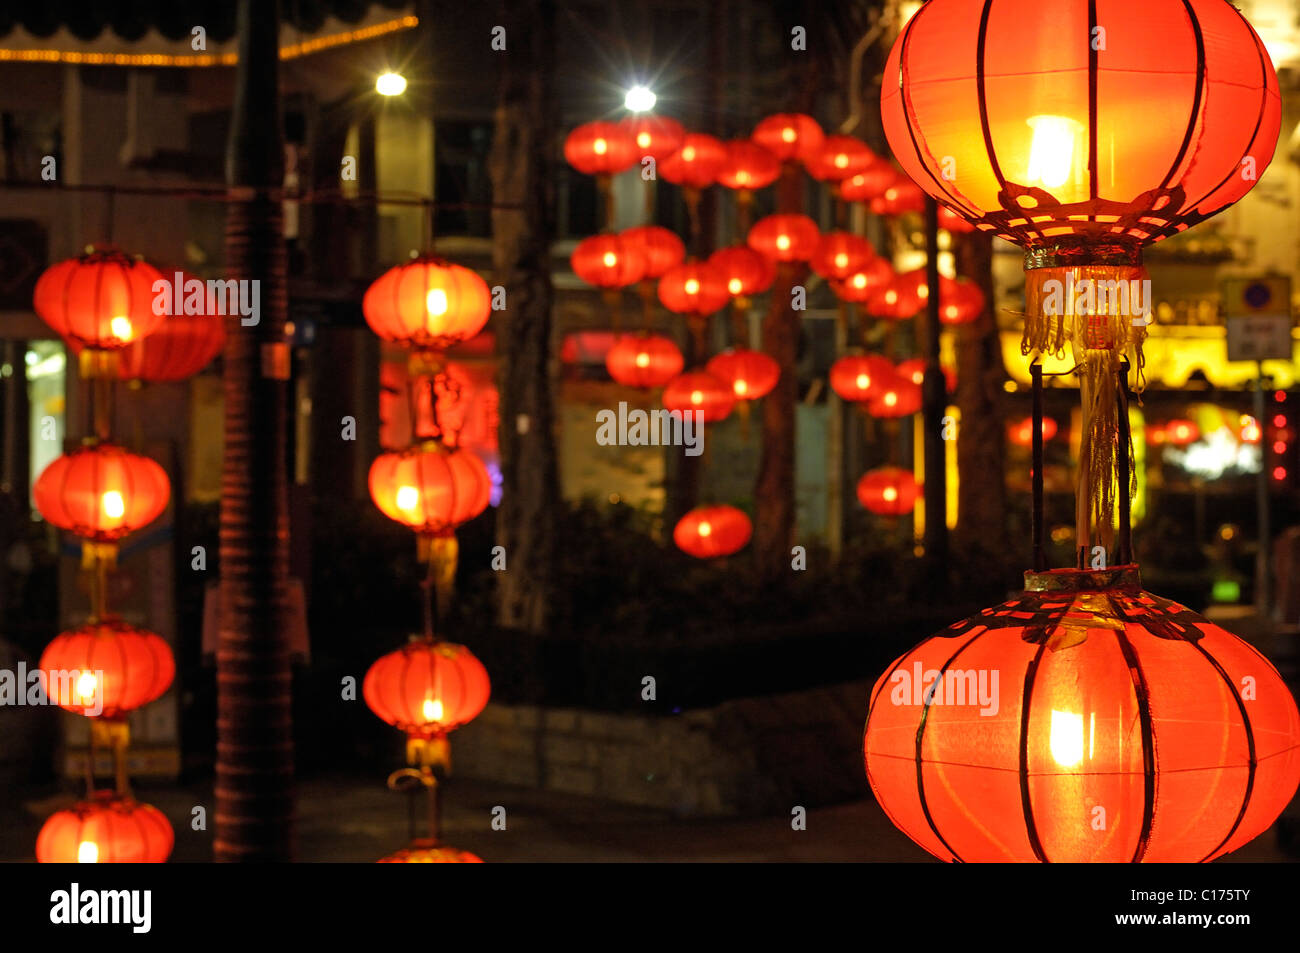 Linternas de Lei Yue Mun, Tsim Sha Tsui, Hong Kong, China, Asia Foto de stock